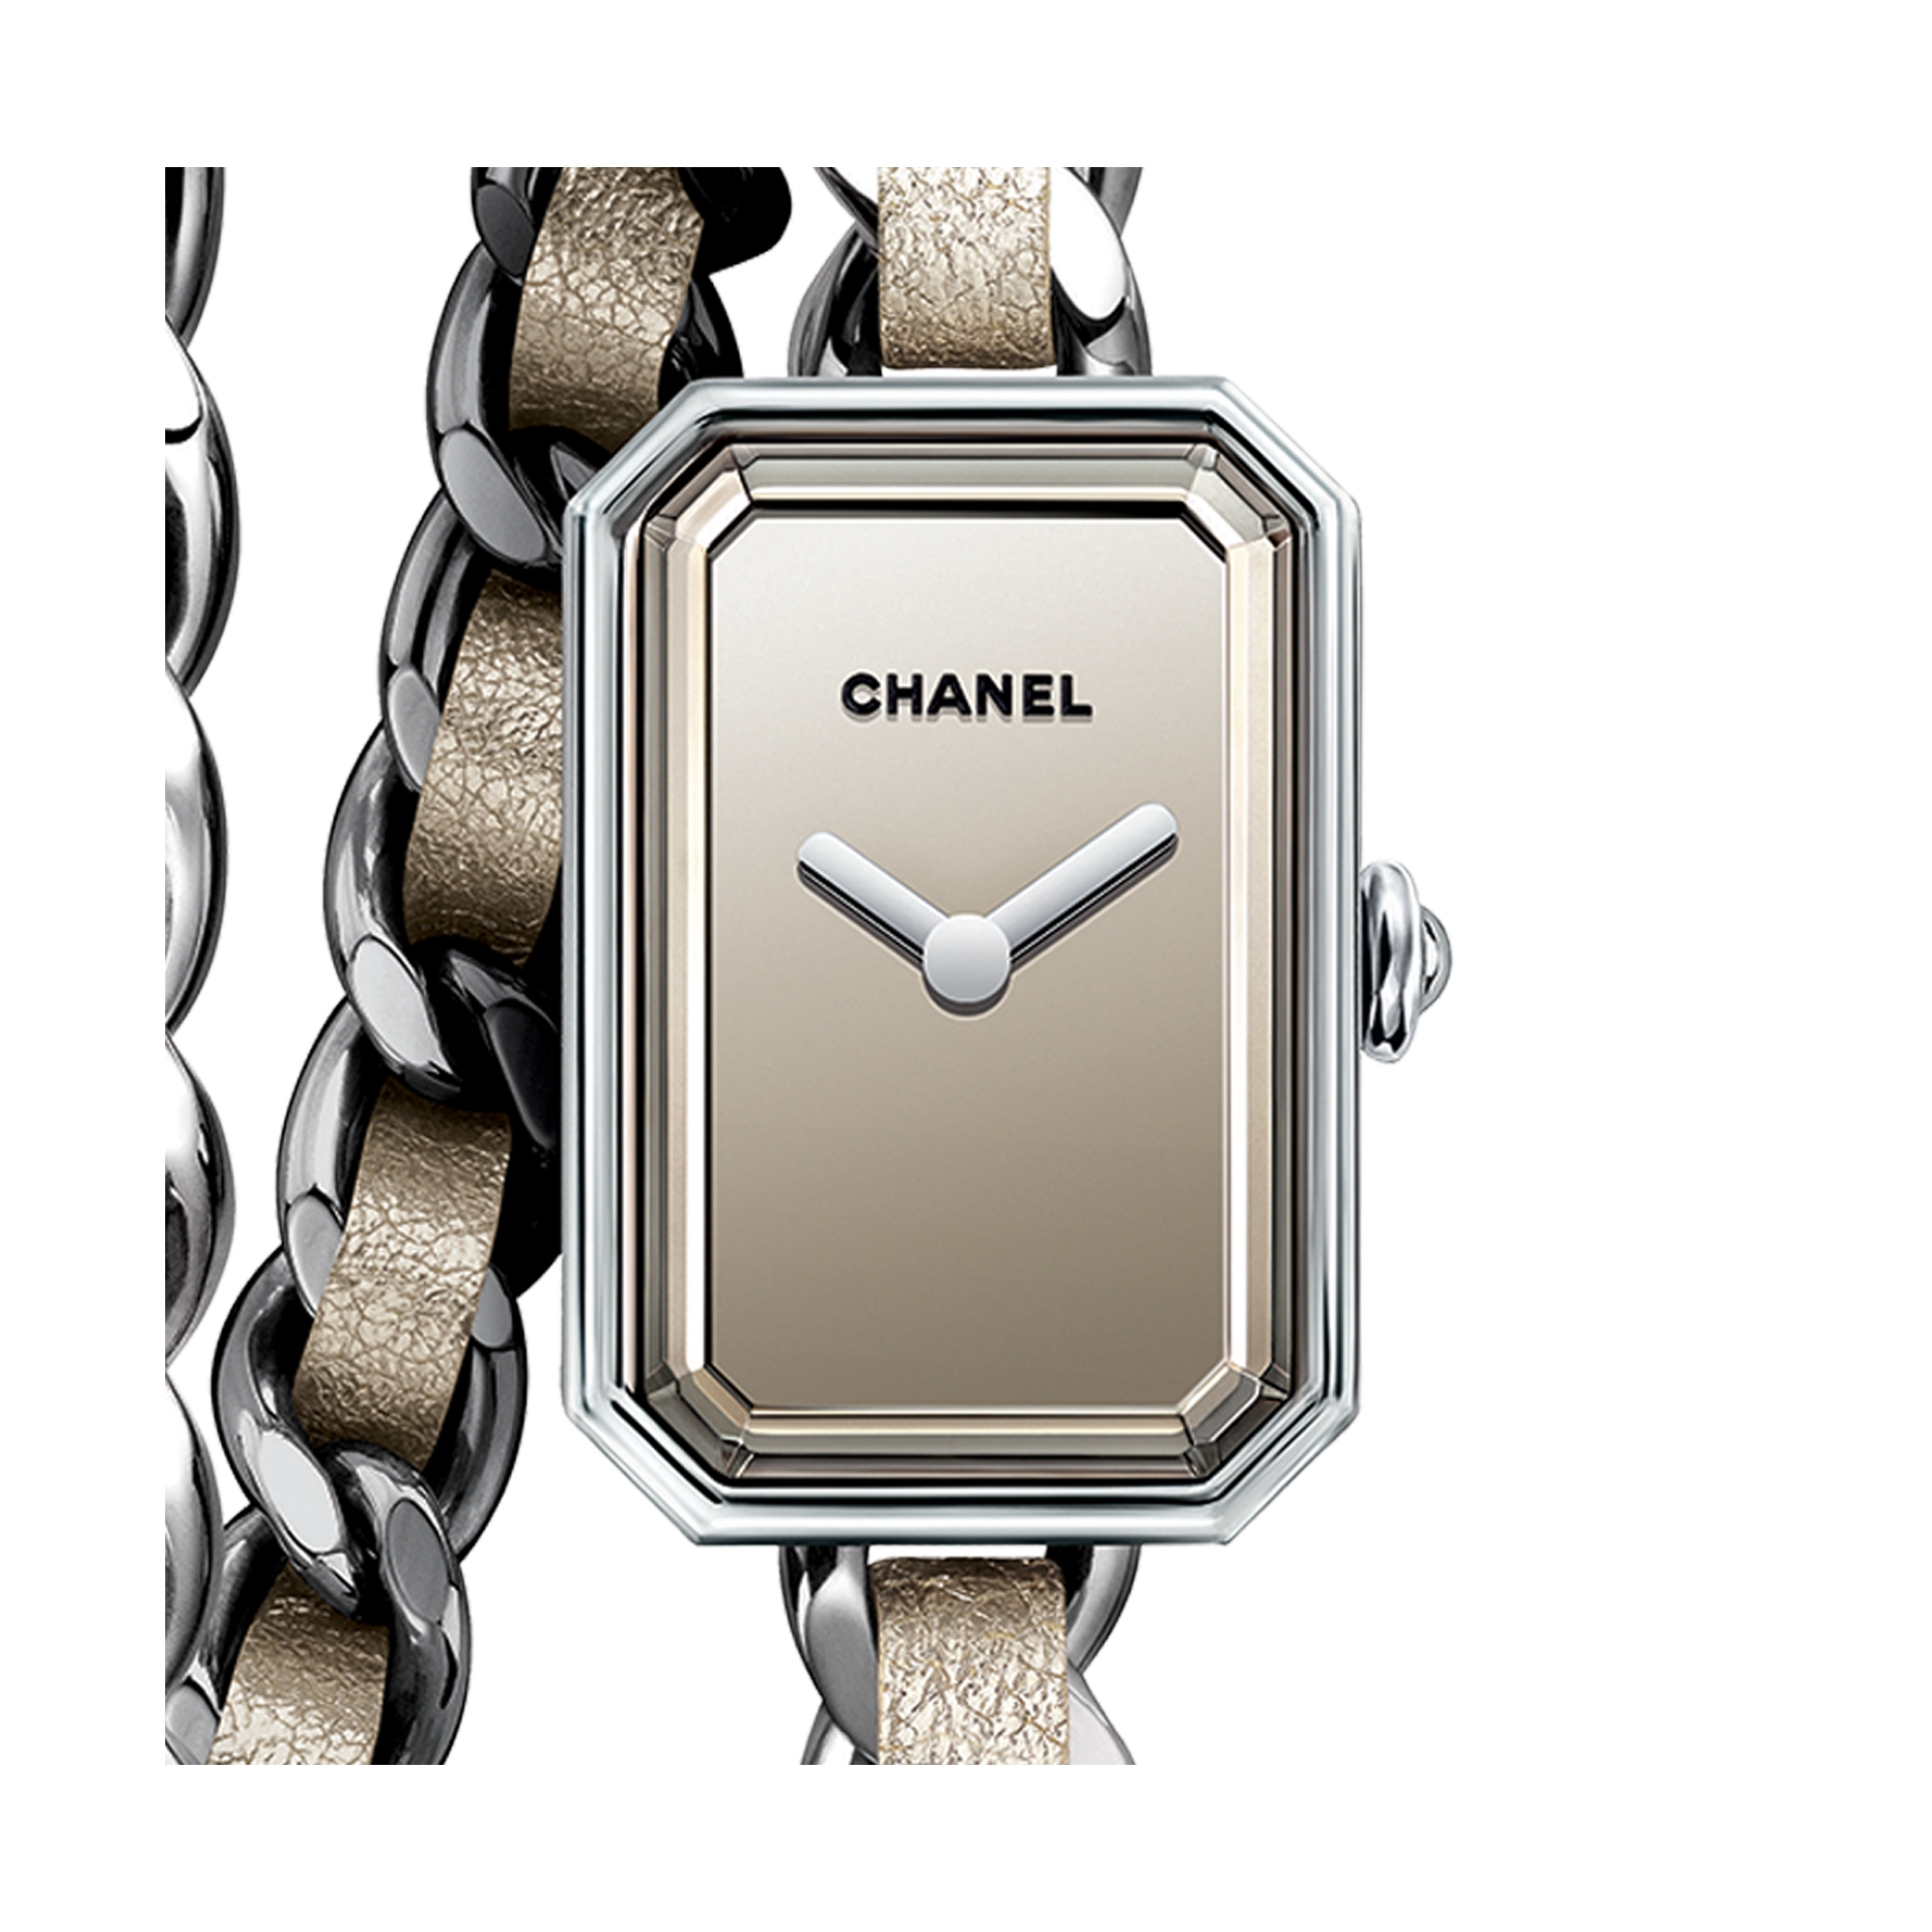 Wow Đẹp quáĐồng Hồ Nữ Chanel Dây Xích Rose Gold